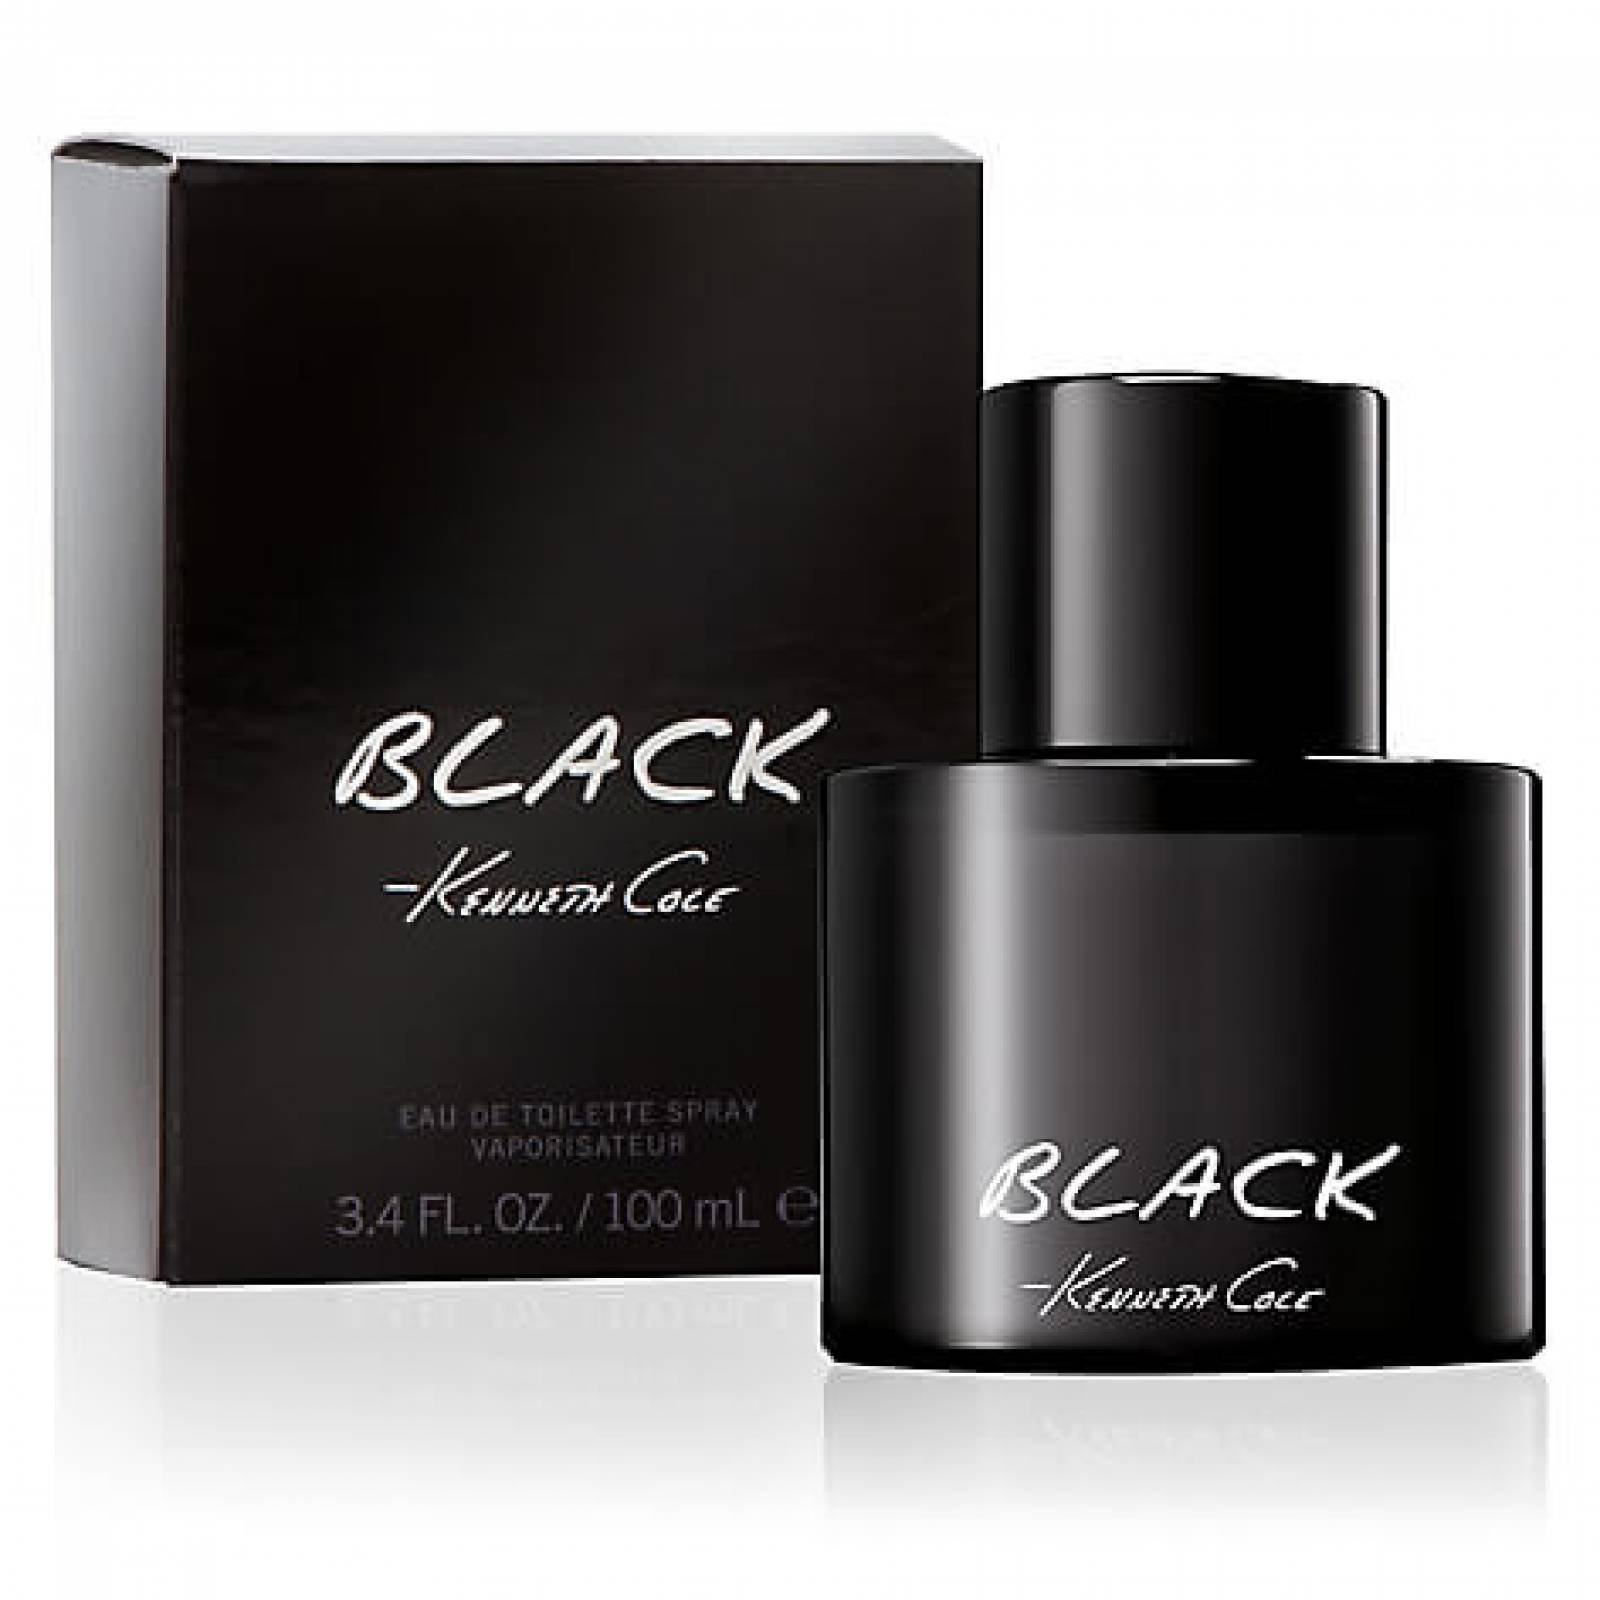 Perfume Black Hombre De Kenneth Cole Edt 100ml Original